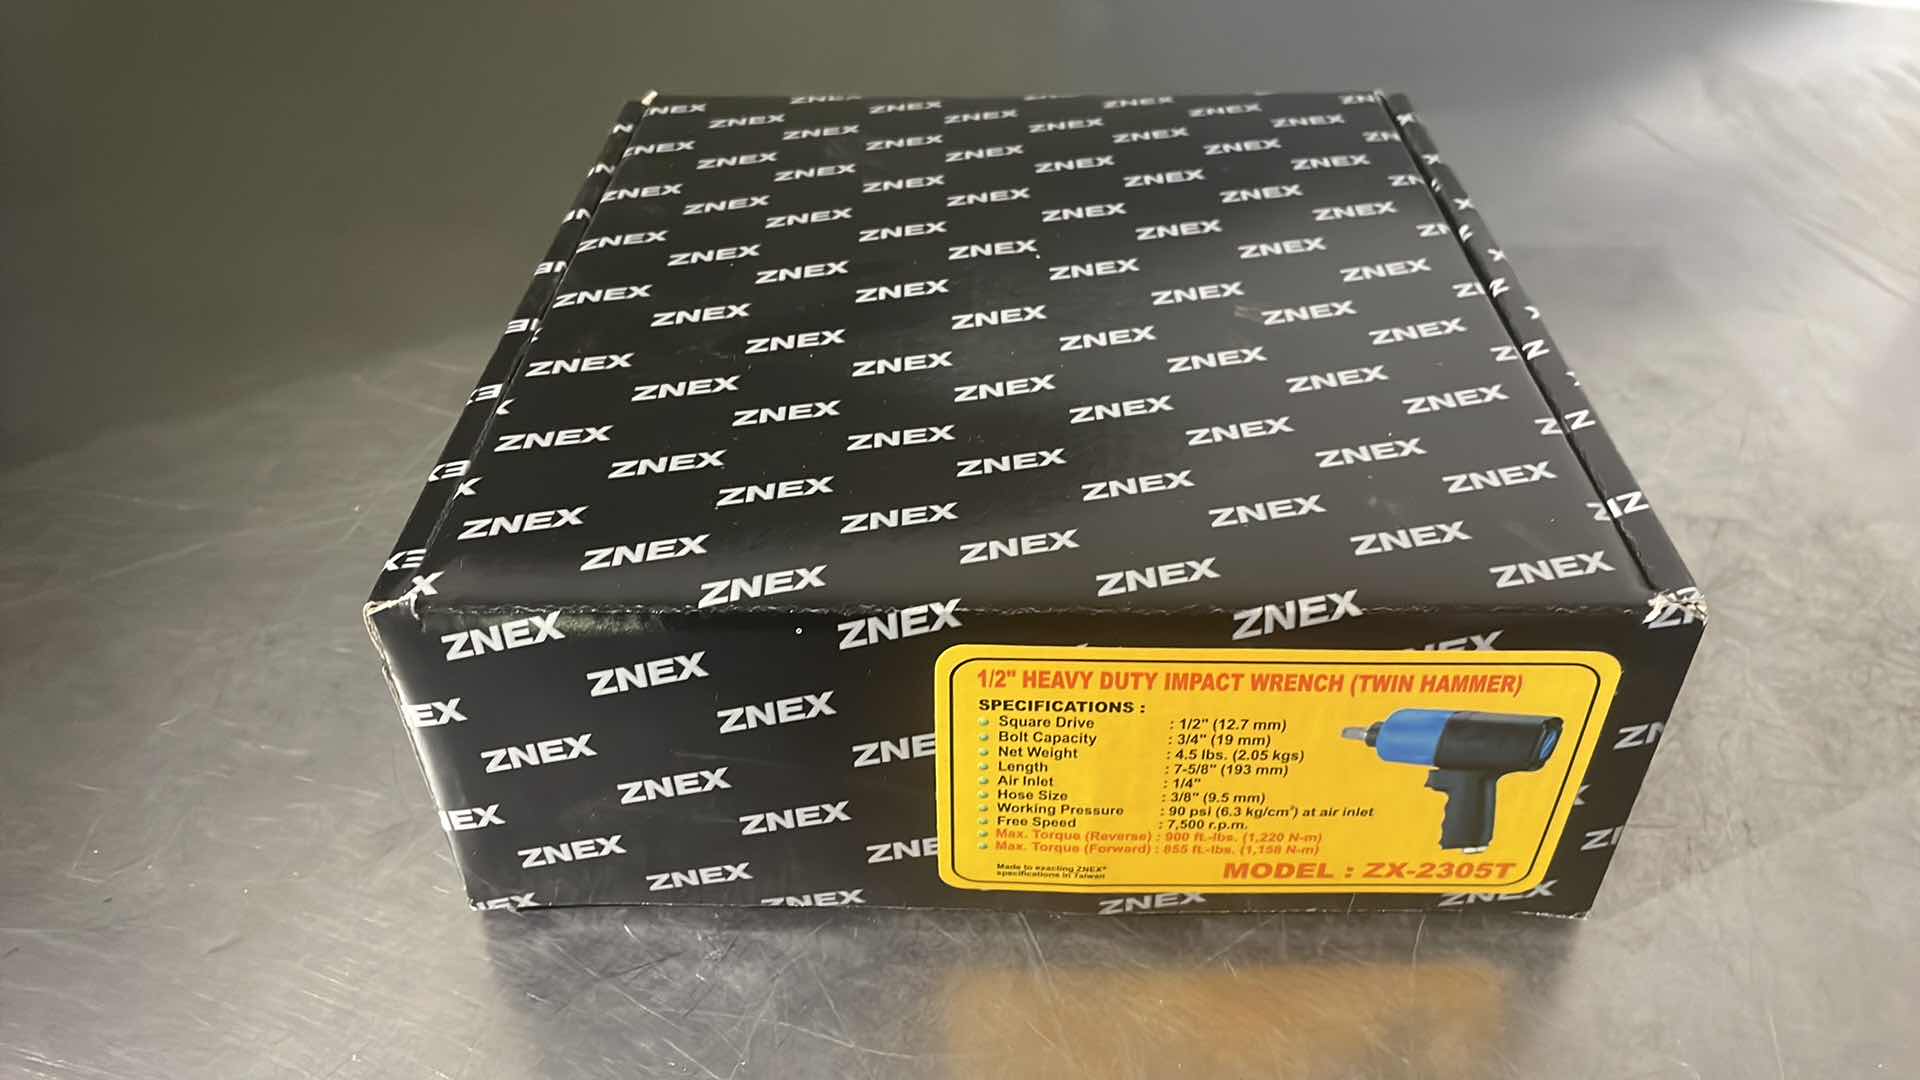 Photo 1 of 1/2” HEAVY DUTY IMPACT WRENCH TWIN HAMMER MODEL ZX-2305T